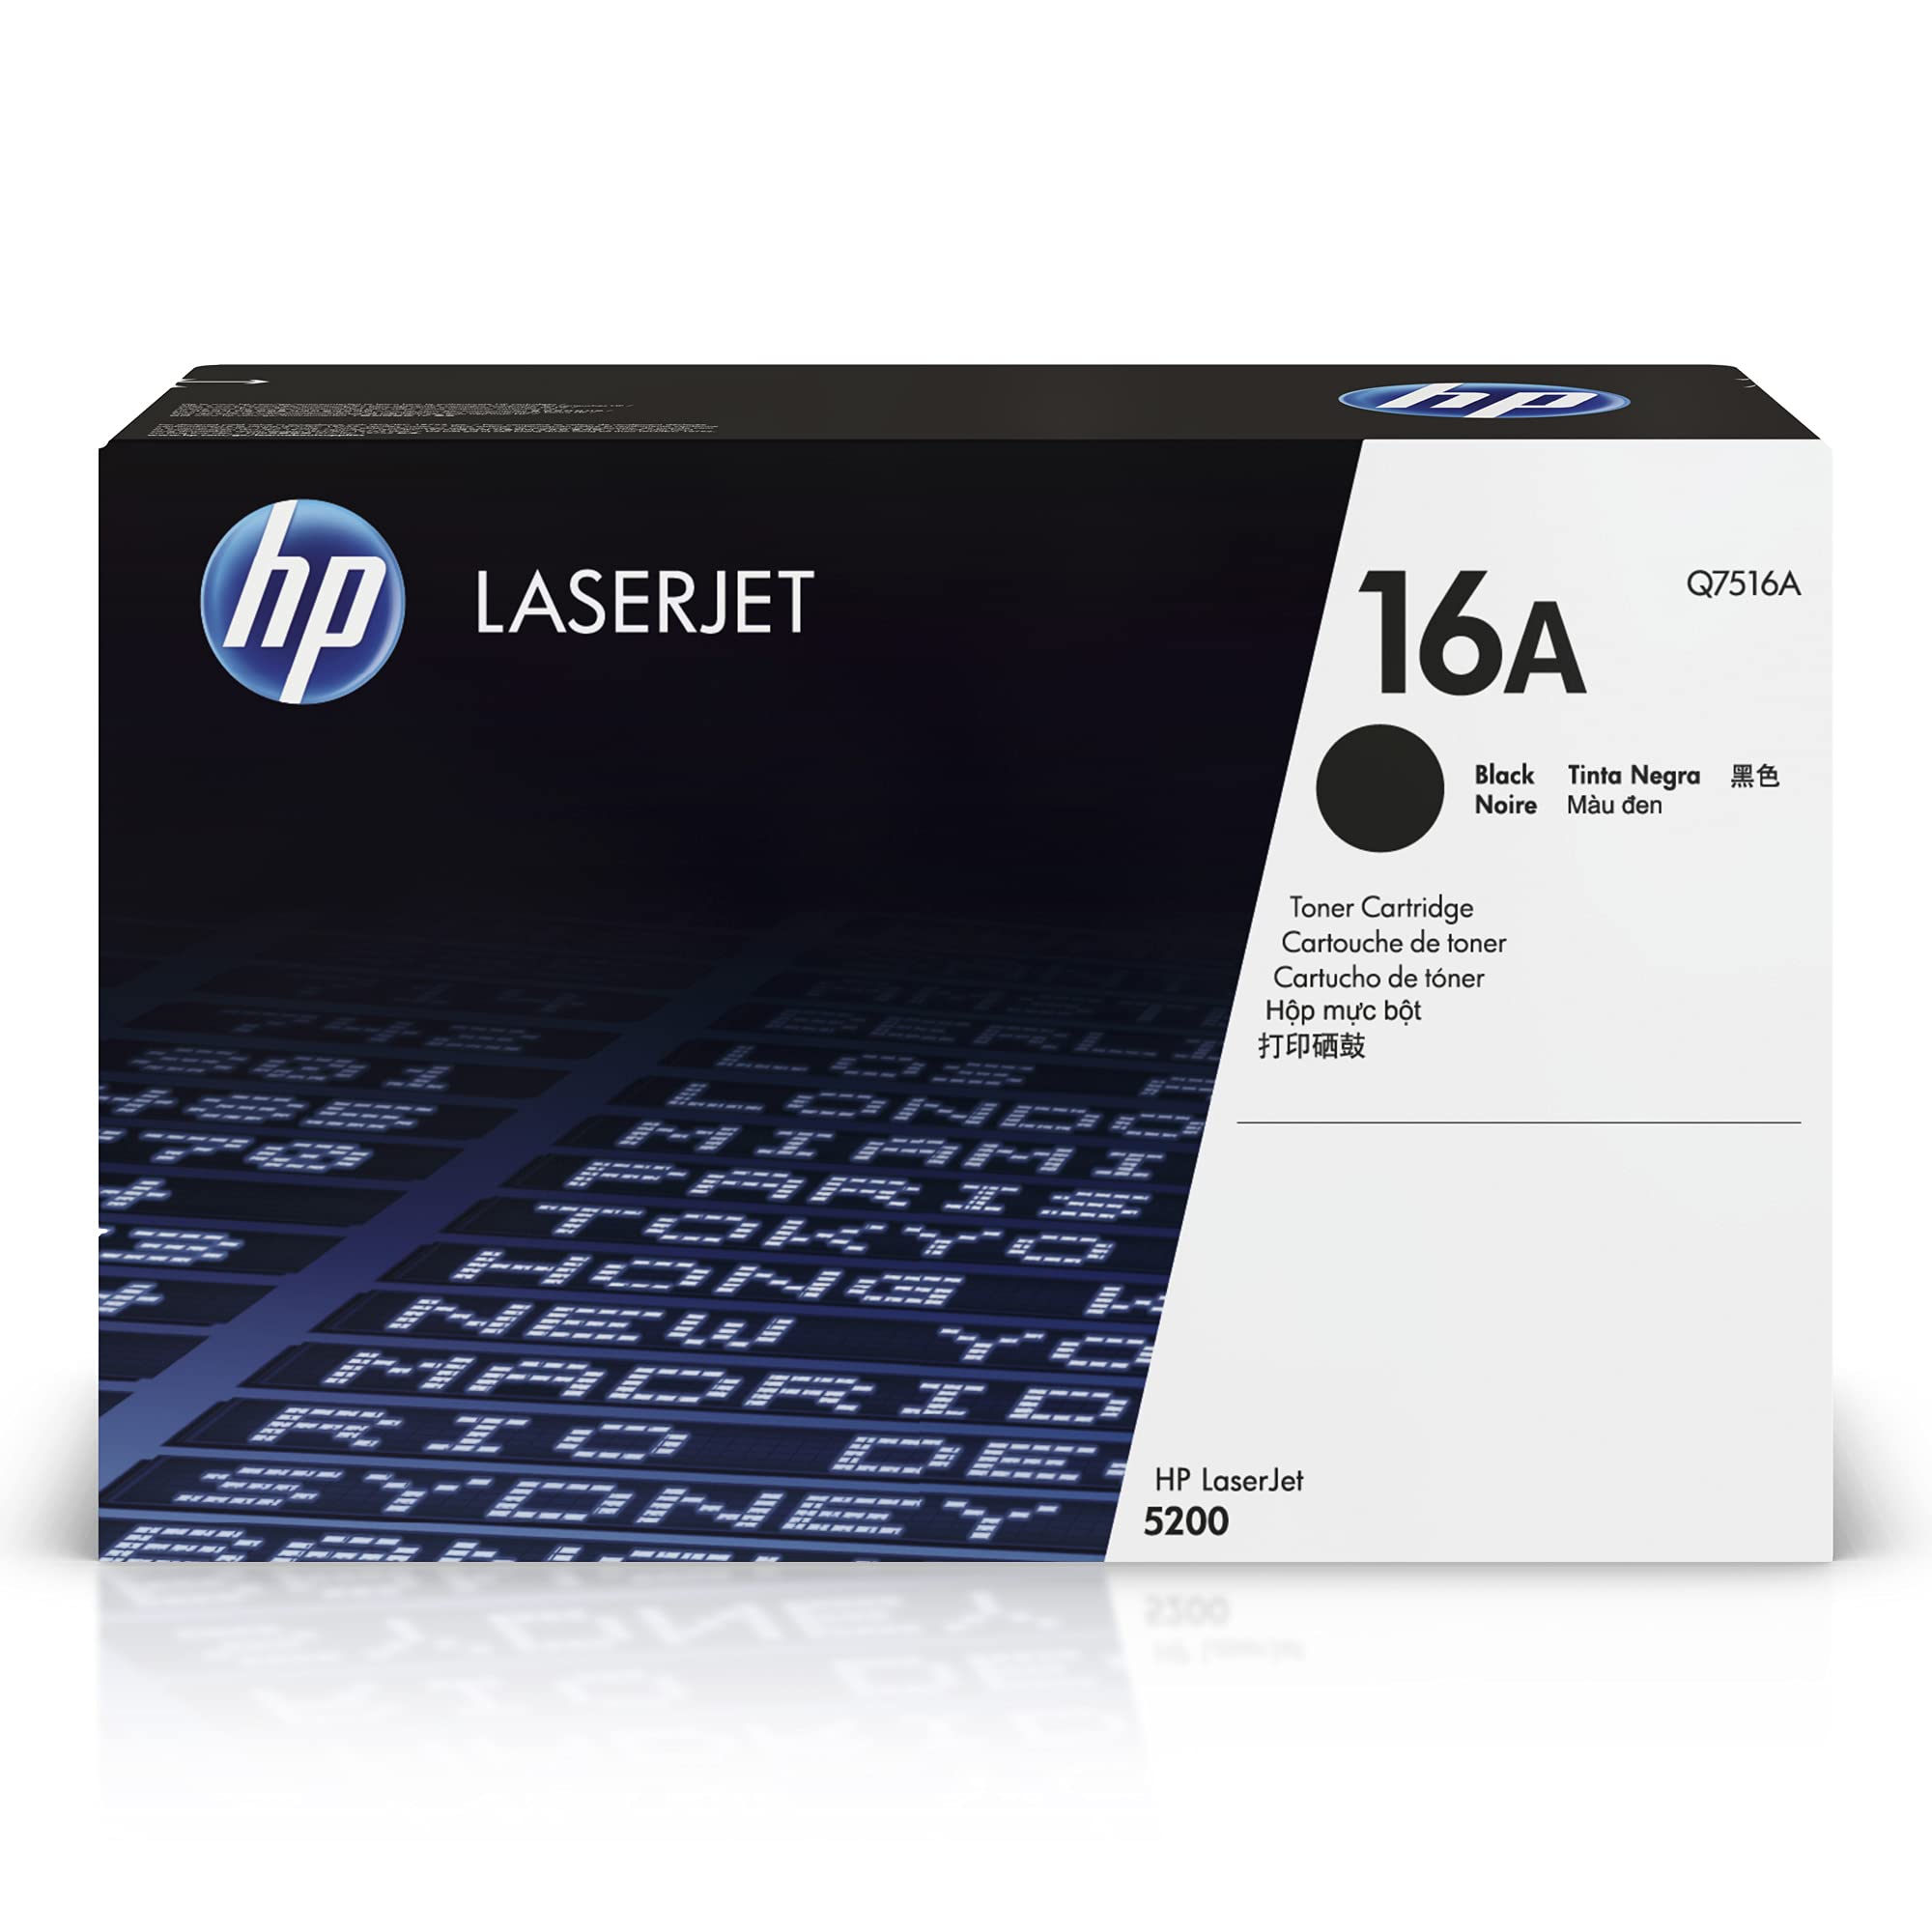 HP Оригинальный картридж с черным тонером 16A | Работает с LaserJet серии 5200 | Q7516A